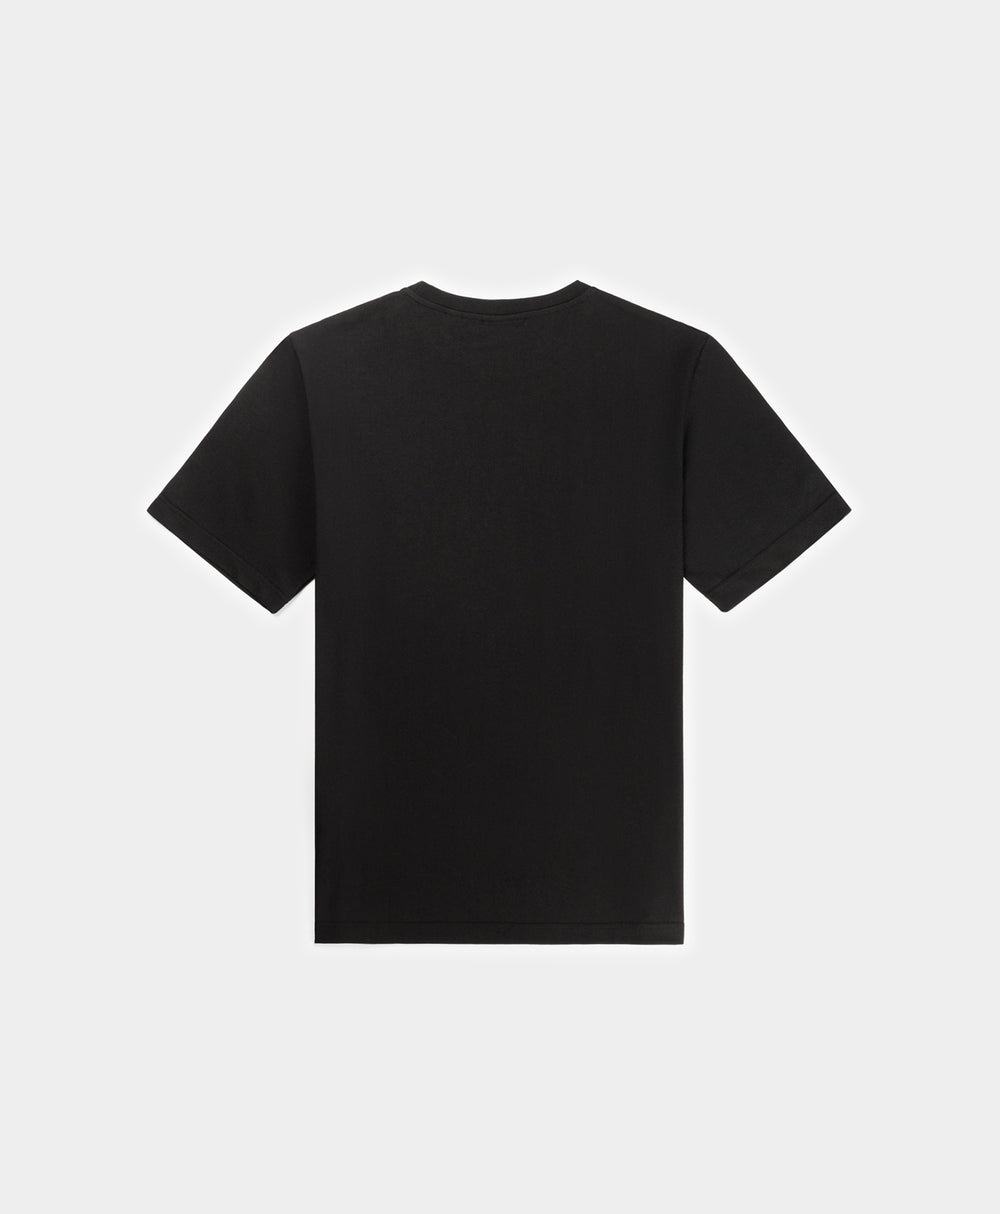 DP - Black Rivo T-Shirt - Packshot - Rear